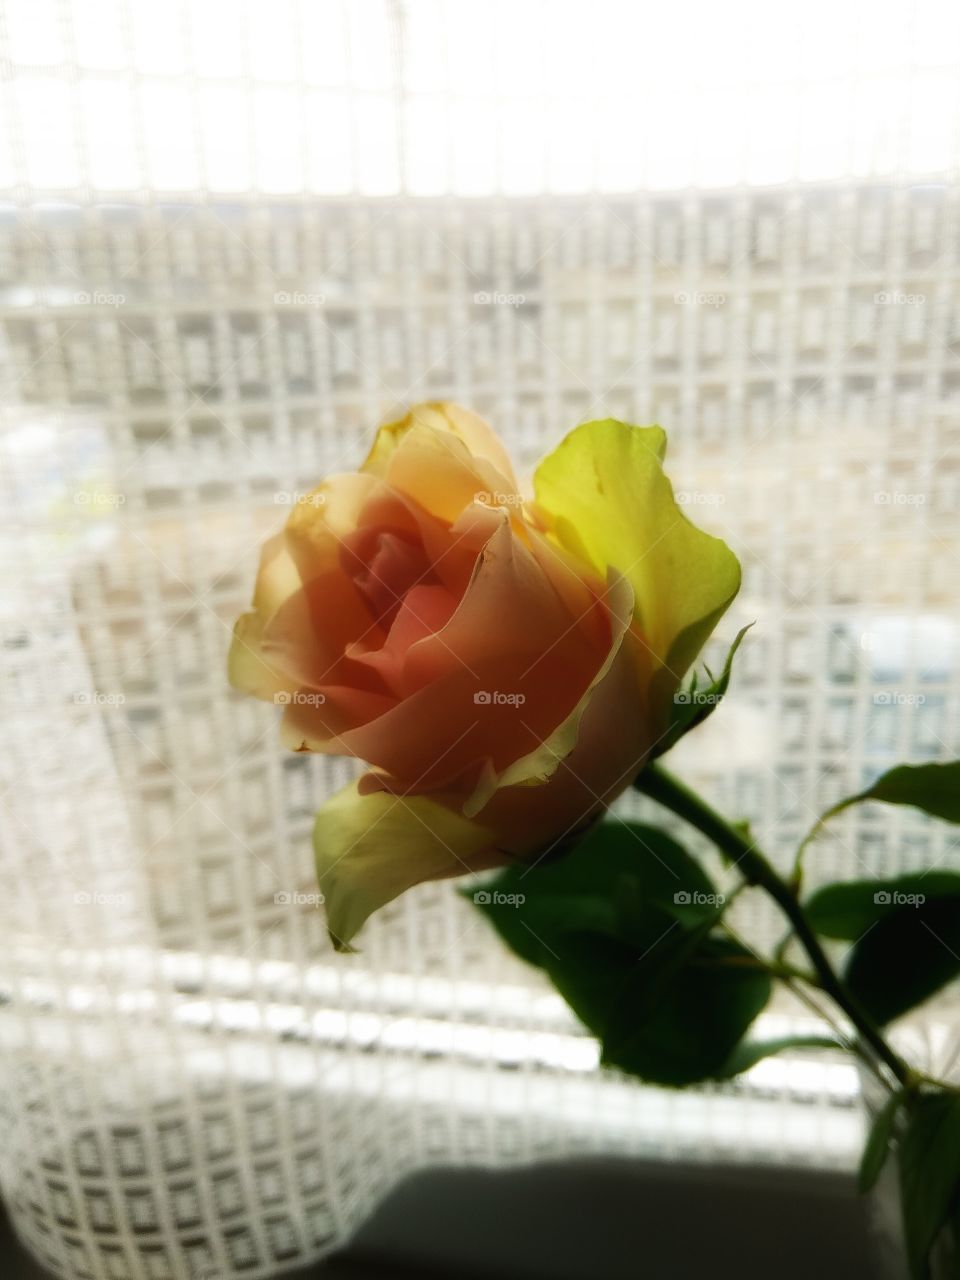 Cream rose